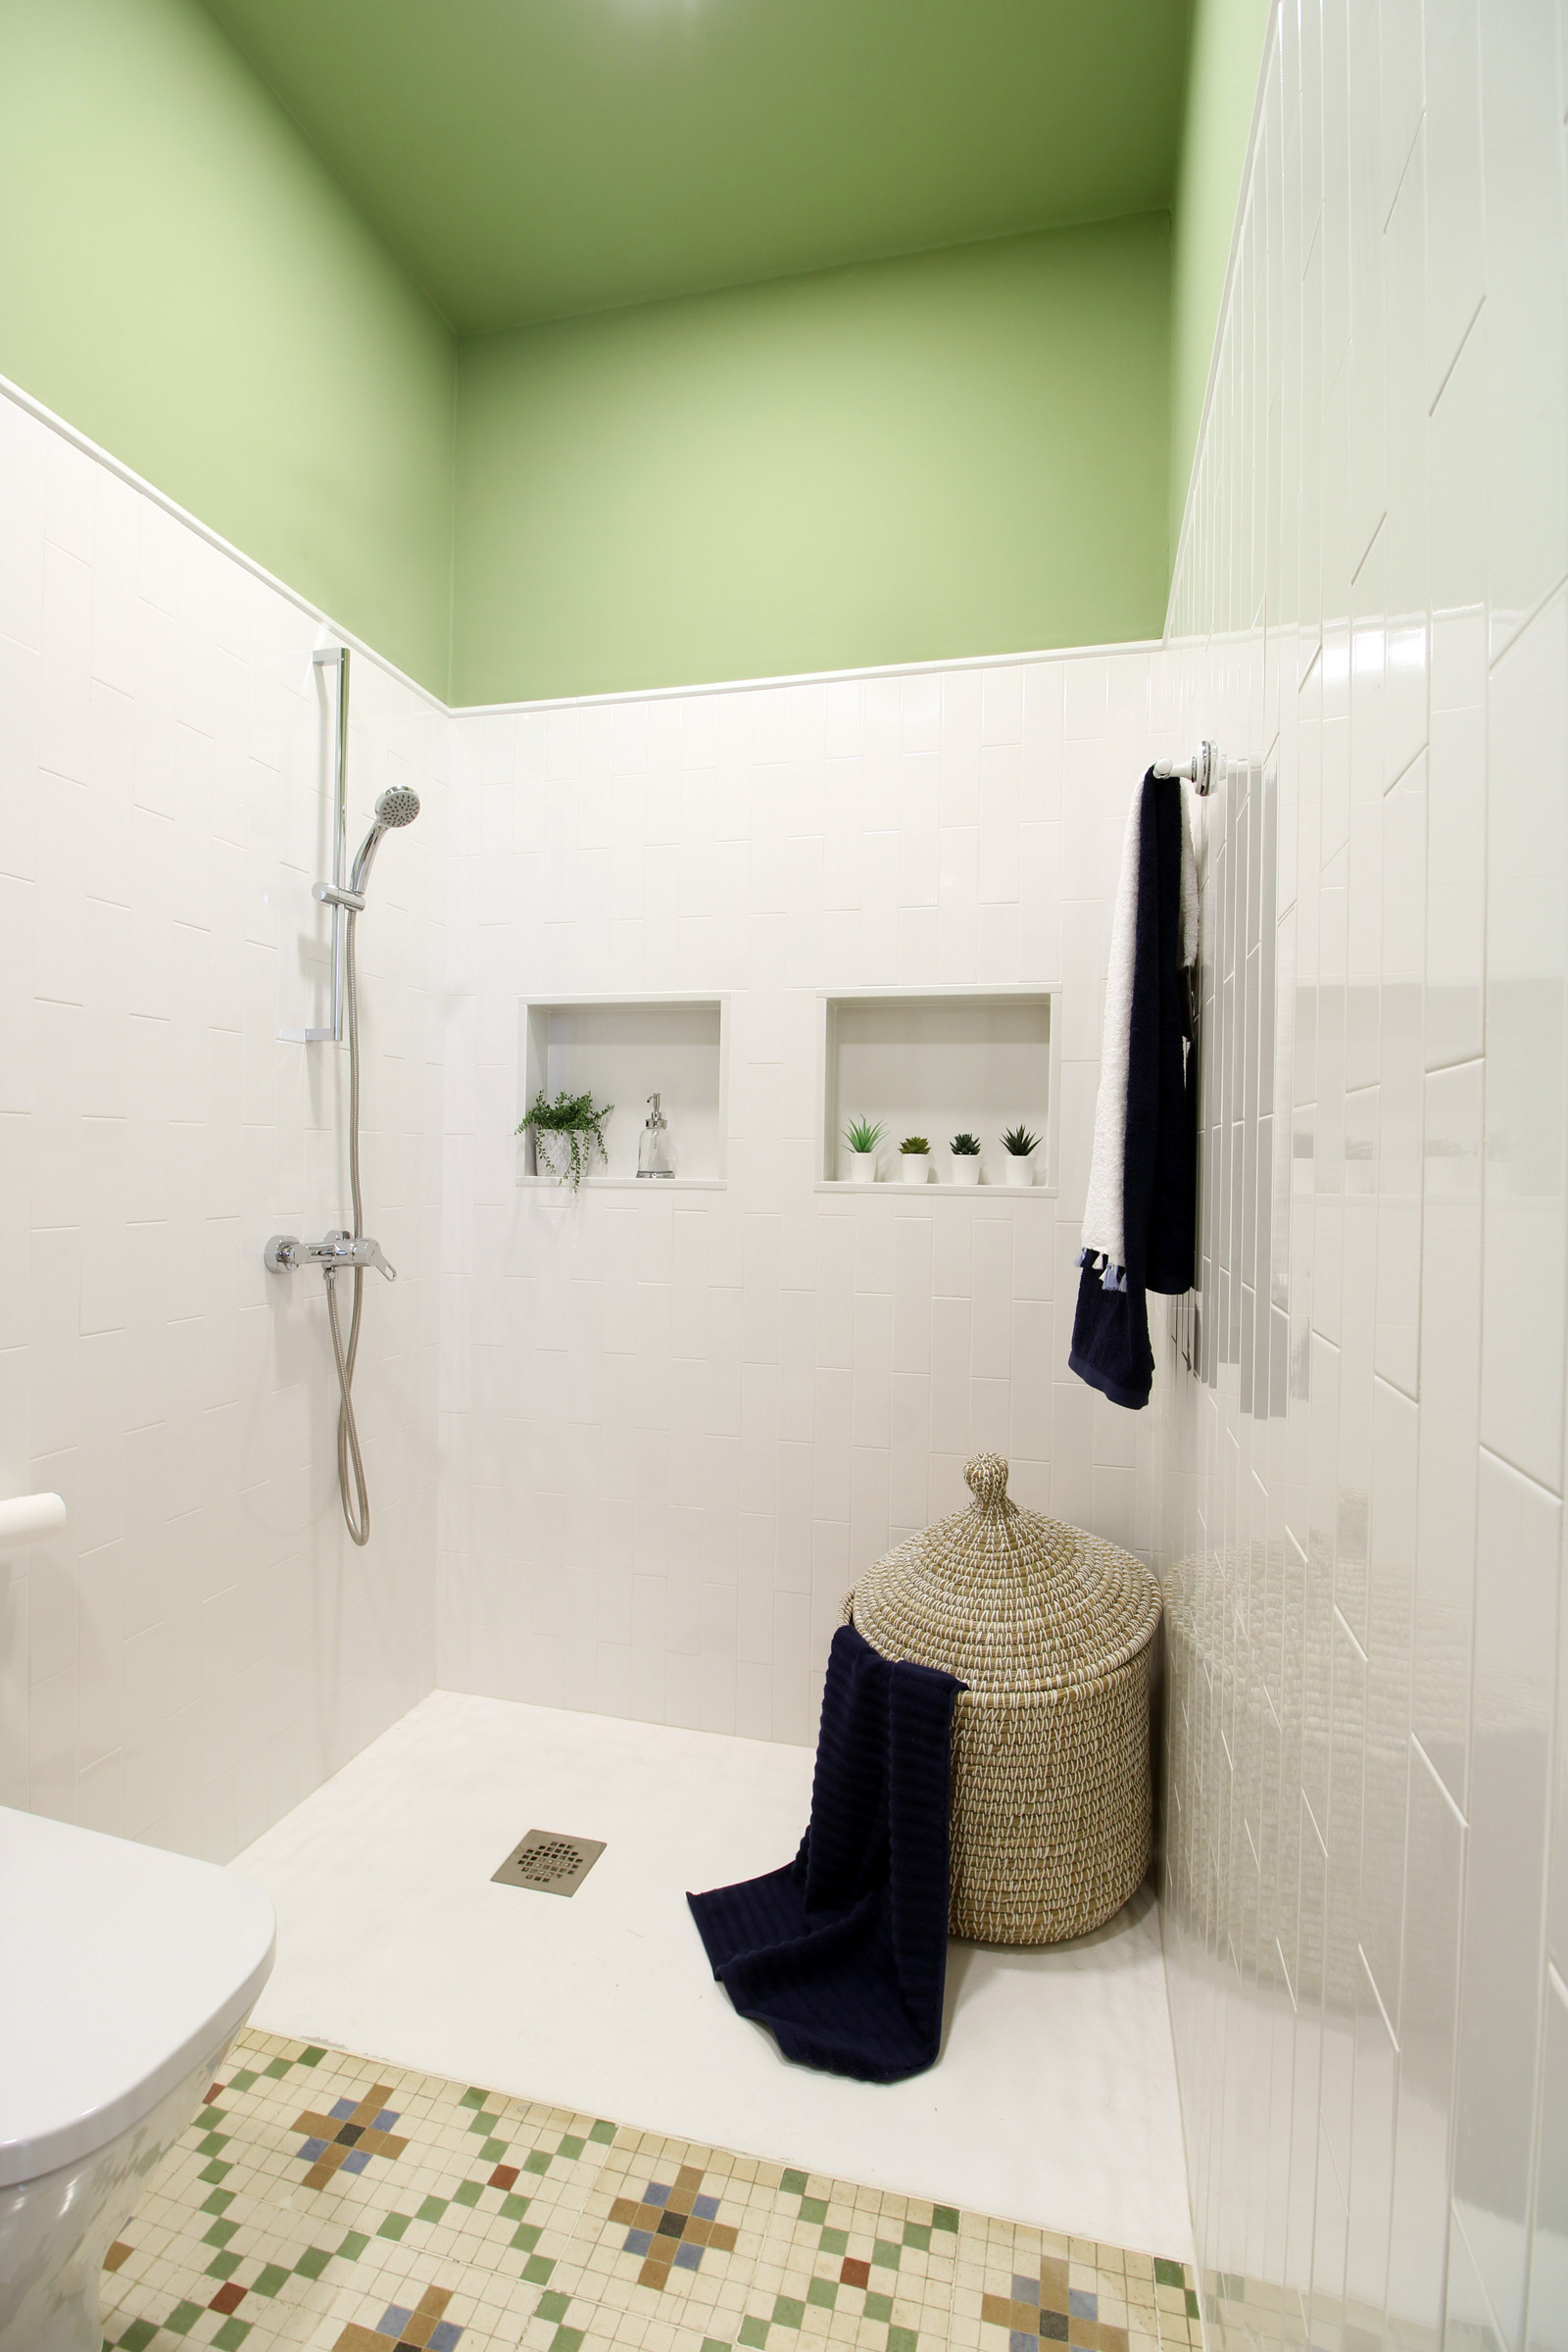 Amplia ducha, pared mitad superior verde, suelo con mosaicos